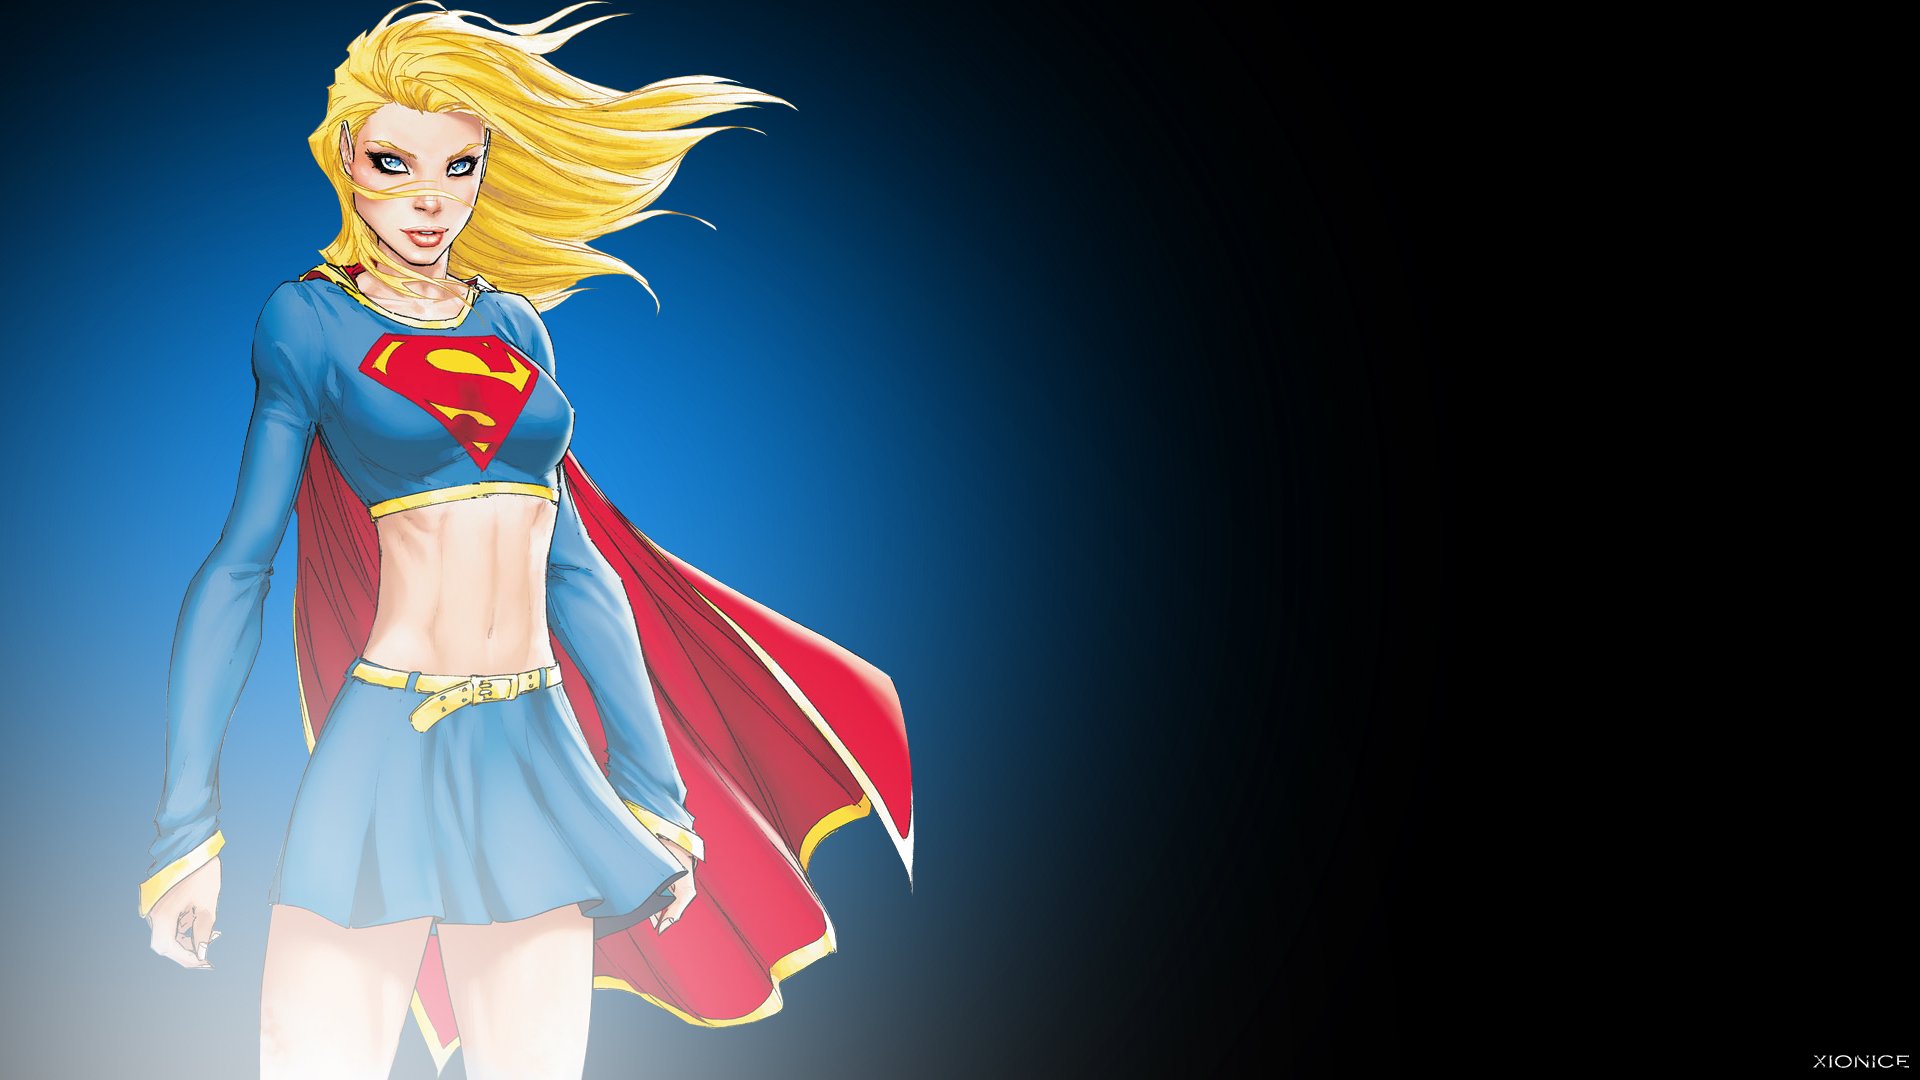 dc, Comics, Costume, Superheroes, Illustrations, Supergirl, Drawings, Comic, Girls Wallpaper